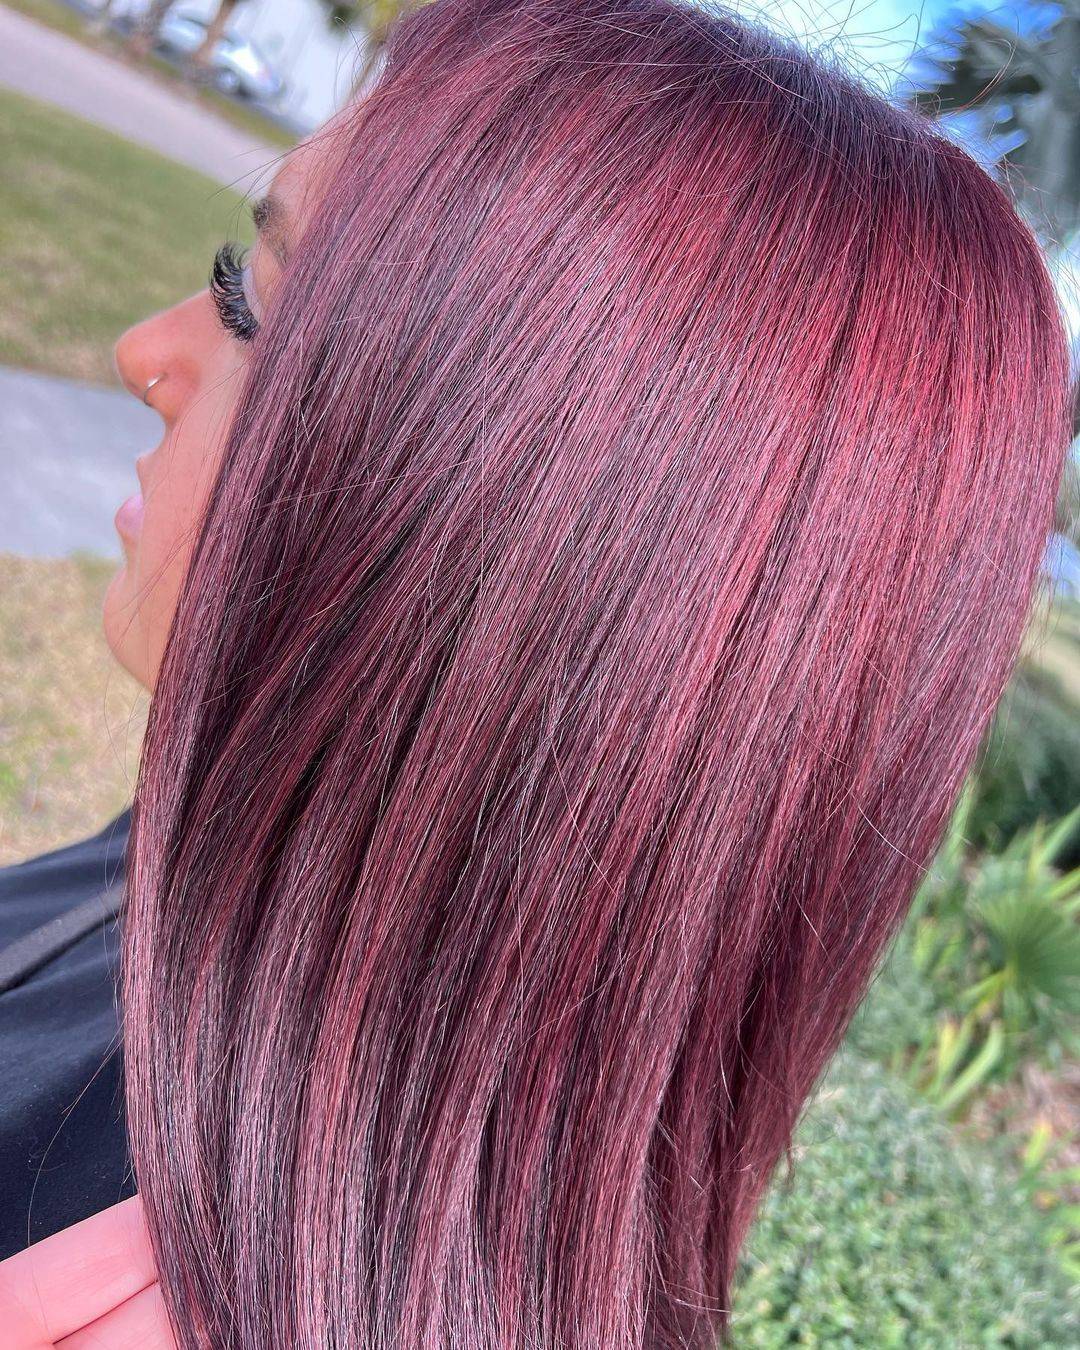 Burgundy hair color 296 burgundy hair color | burgundy hair color for women | burgundy hair color highlights Burgundy Hair Color